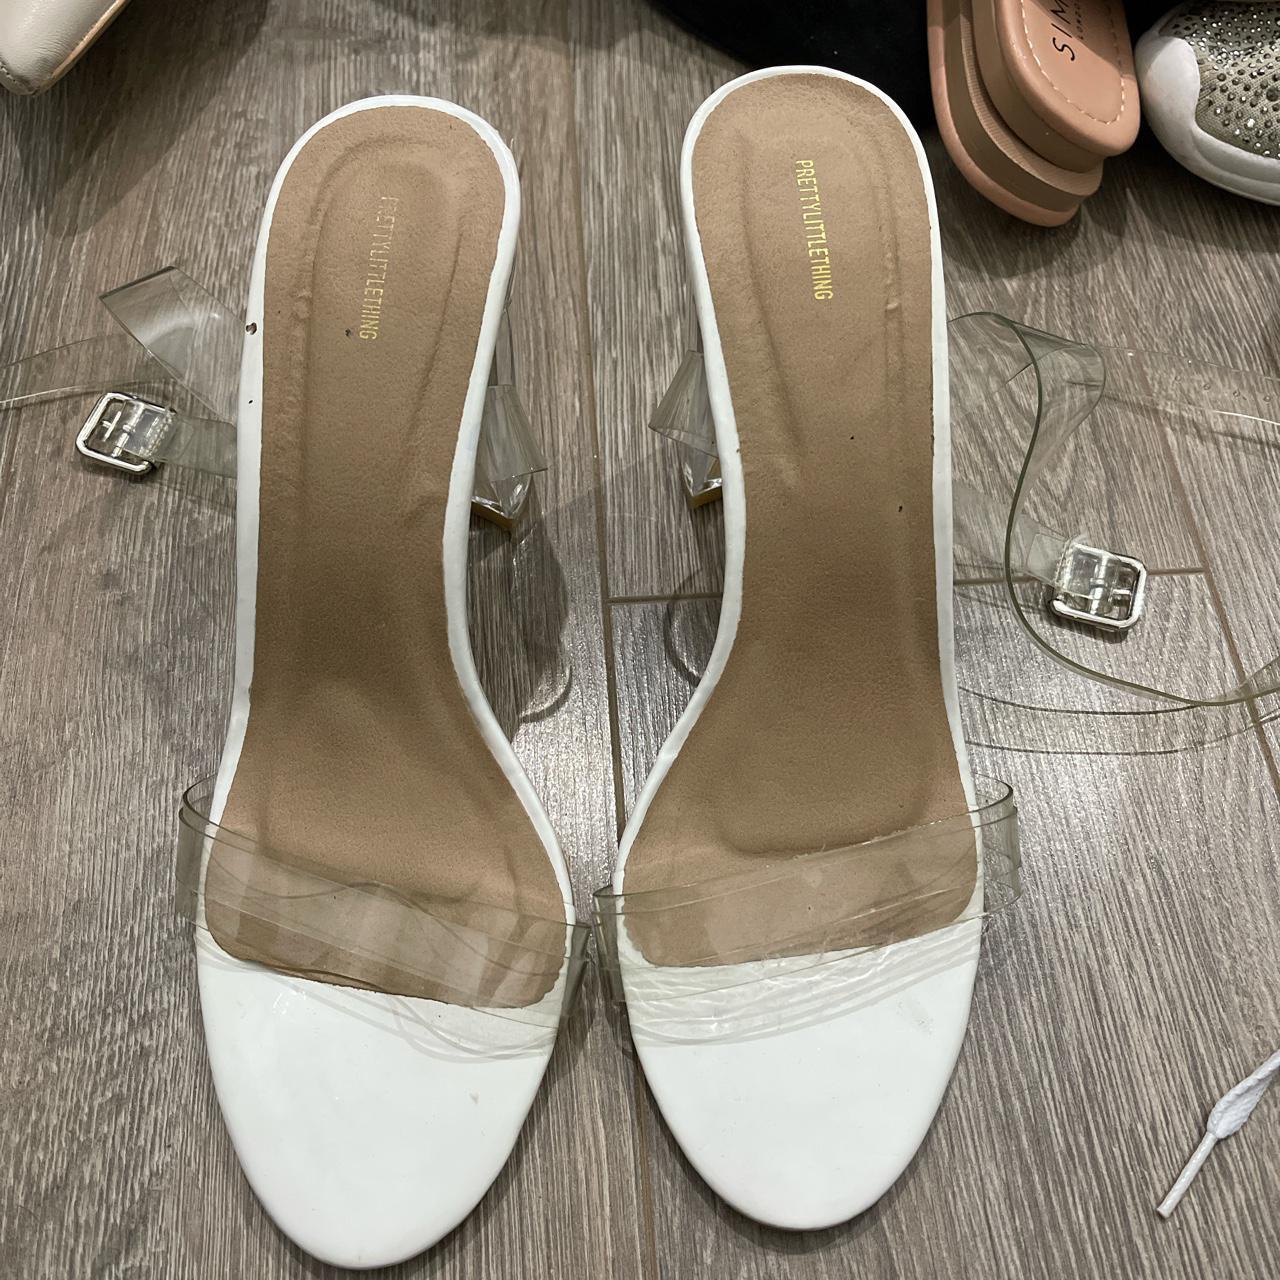 White Perspex heels from plt - Depop